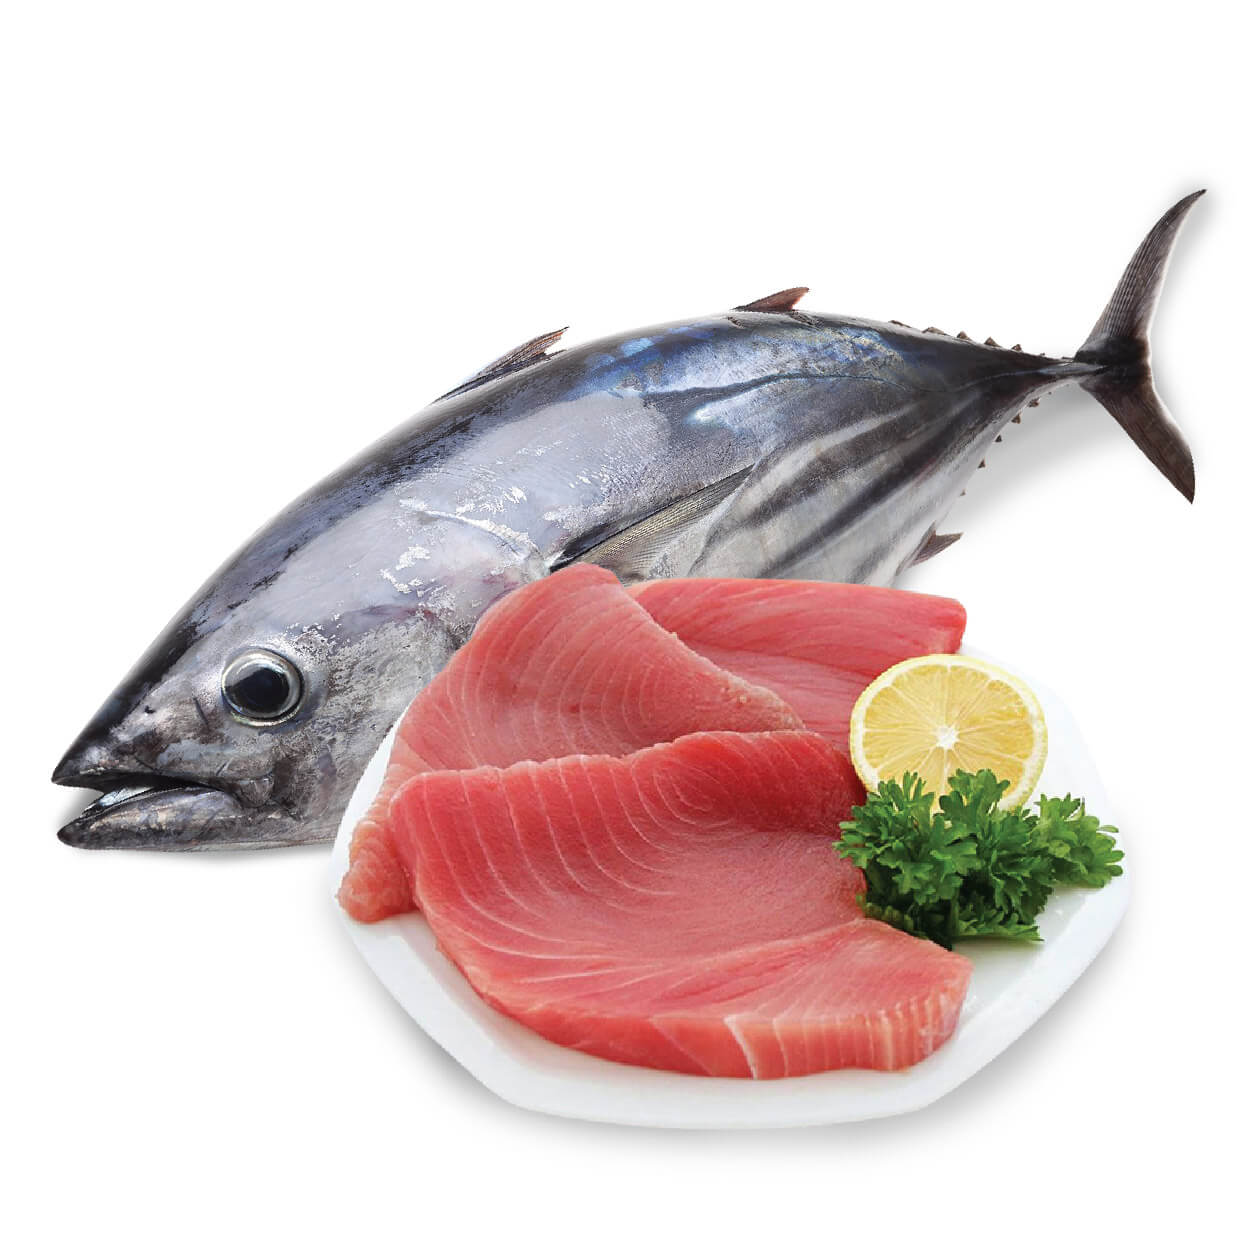 Mẹ bầu có thể ăn cá ngừ không và ăn những loại nào?